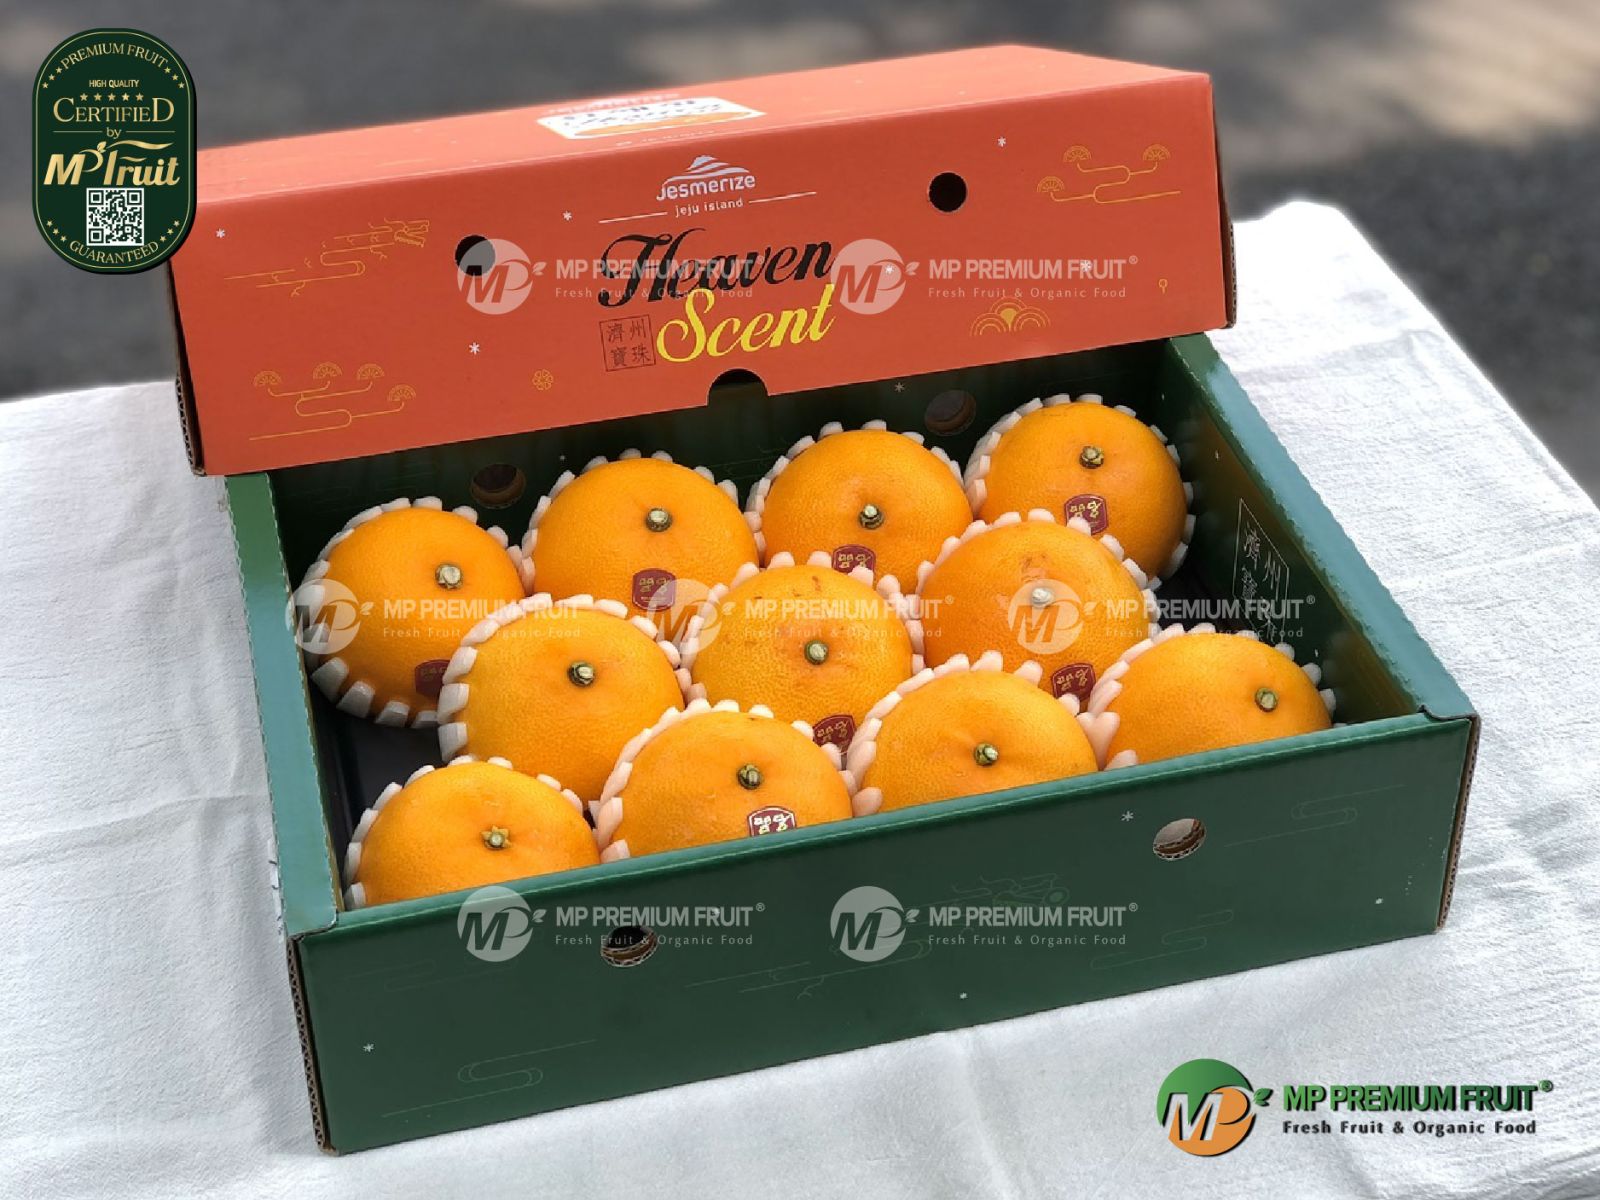 Quýt Jeju Cheonhyehyang Hàn Quốc - Hộp 3kg tại MP Fruit